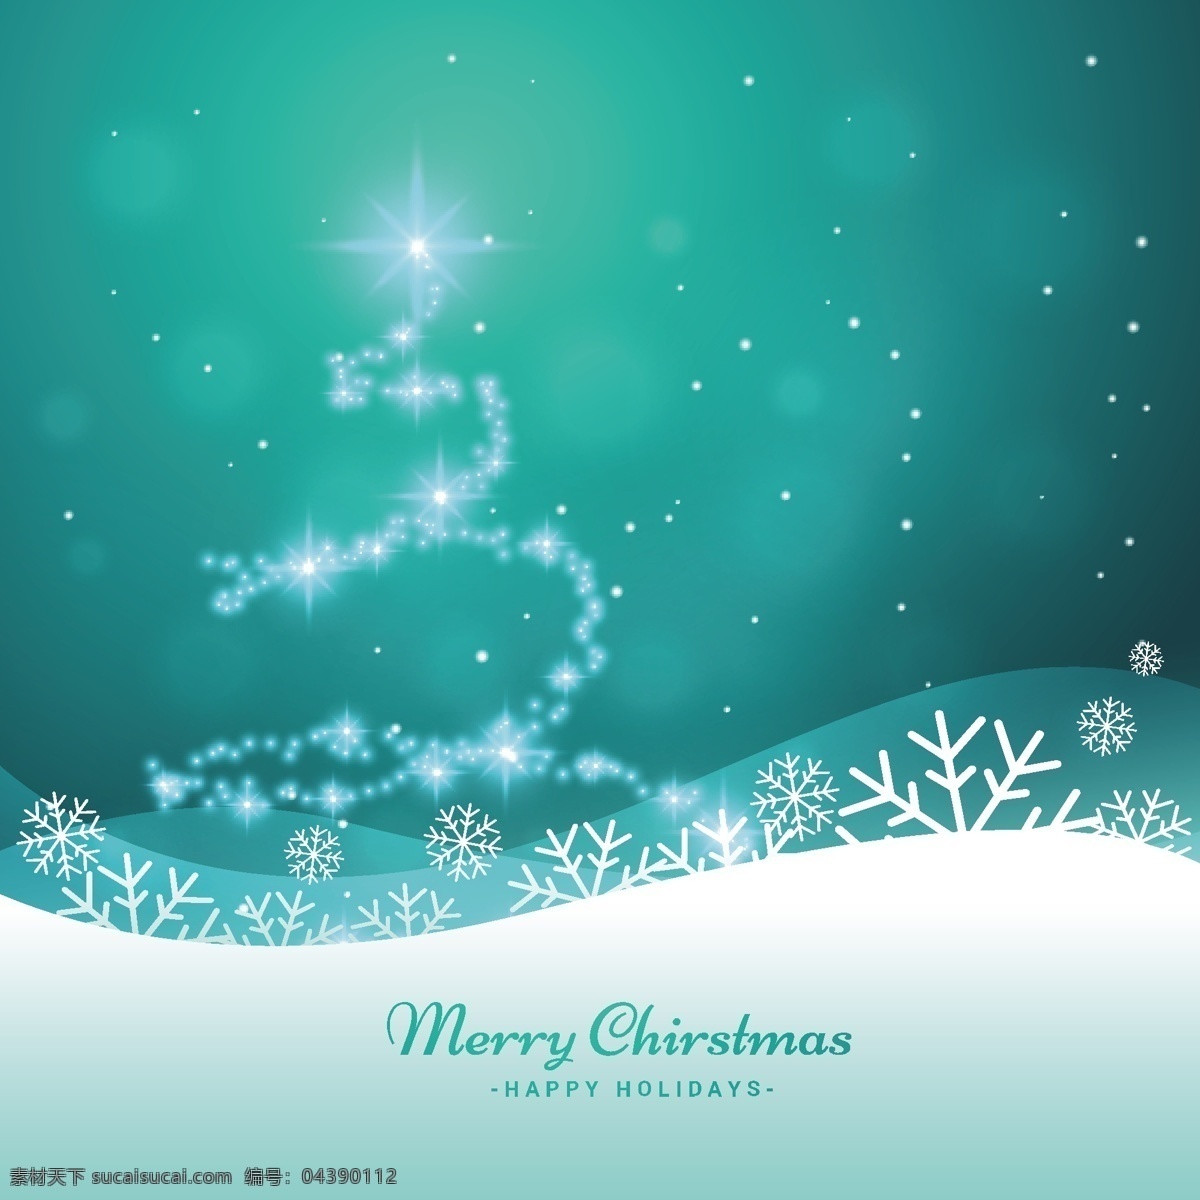 圣诞树 闪闪 发光 背景 卡片 几何 新的一年 新年快乐 雪 圣诞快乐 冬天快乐 圣诞背景 圣诞卡 圣诞 节日 庆典 新 冰 雪花 青色 天蓝色